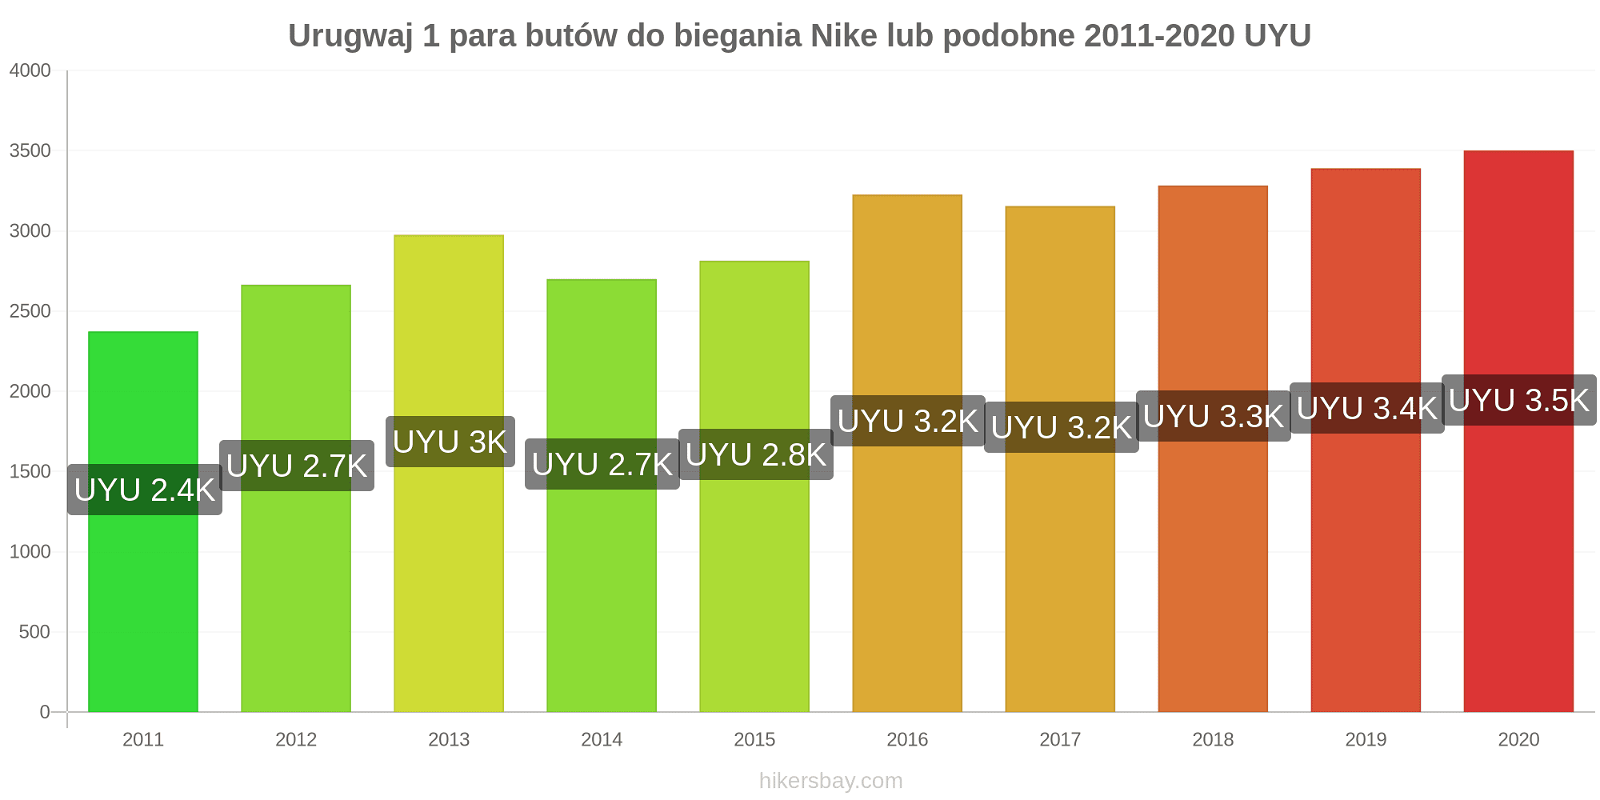 Urugwaj zmiany cen 1 para butów do biegania Nike lub podobne hikersbay.com